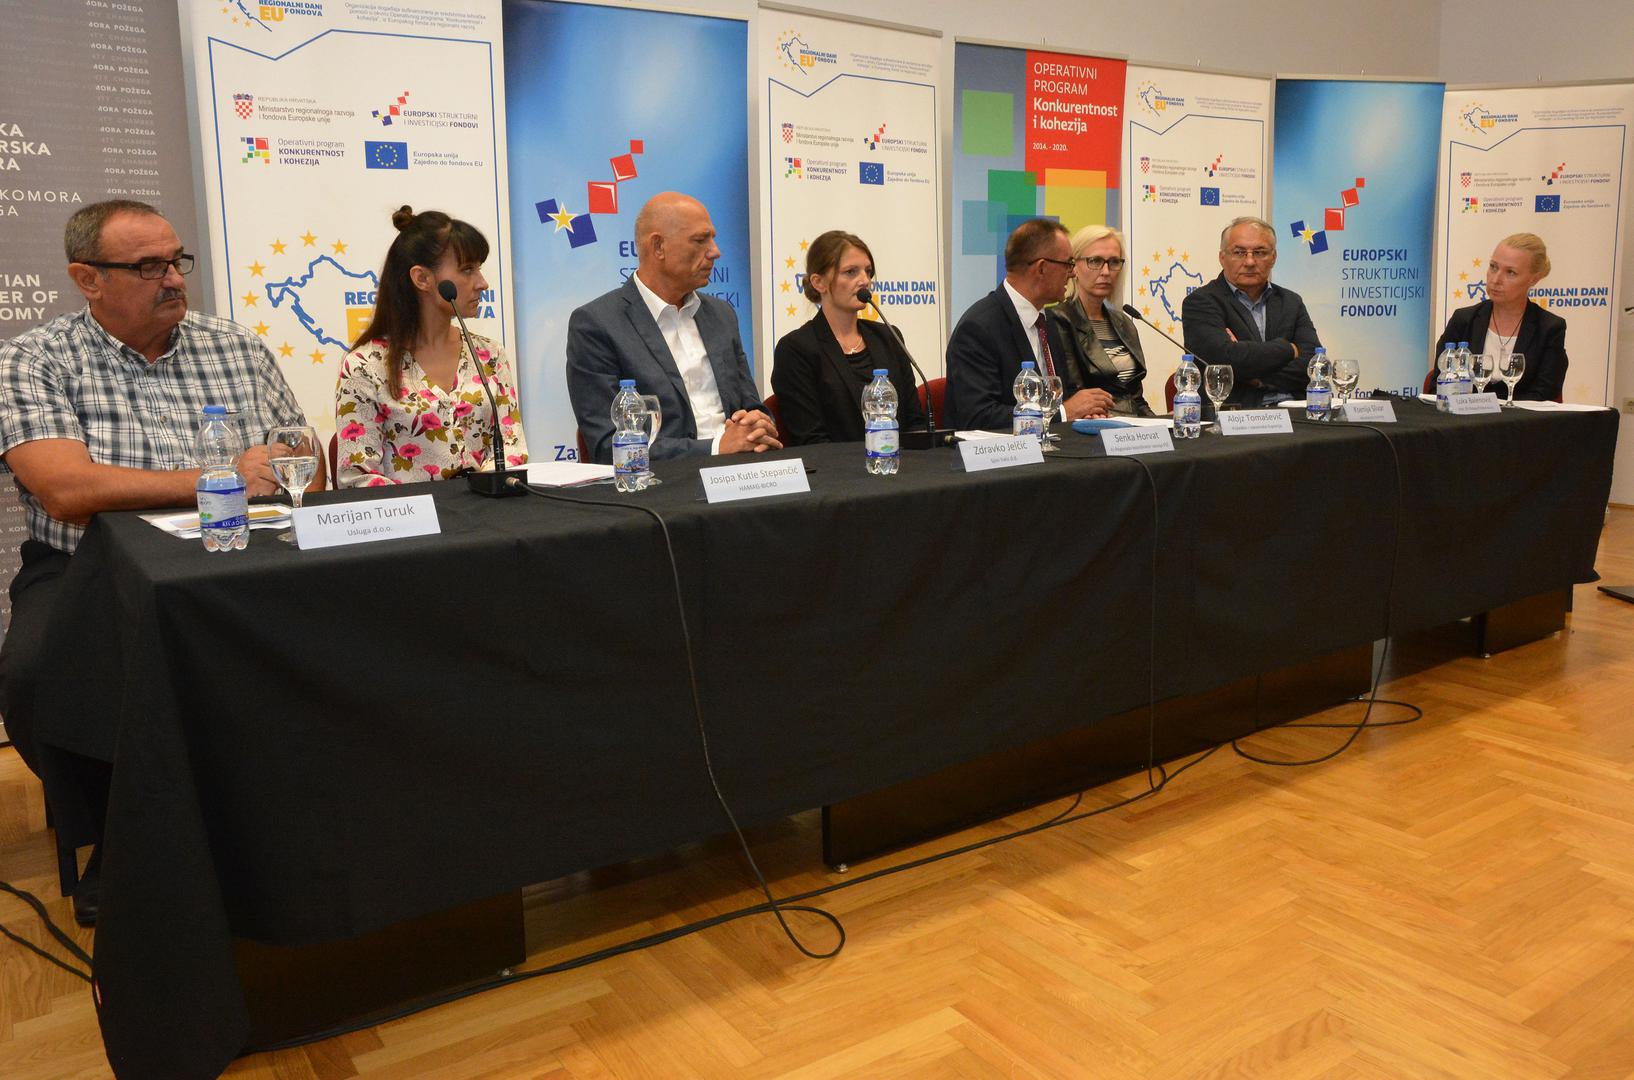 U Požegi su održana stručna predavanja i panel diskusija “Razvoj Požeško-slavonske županije kroz EU fondove”